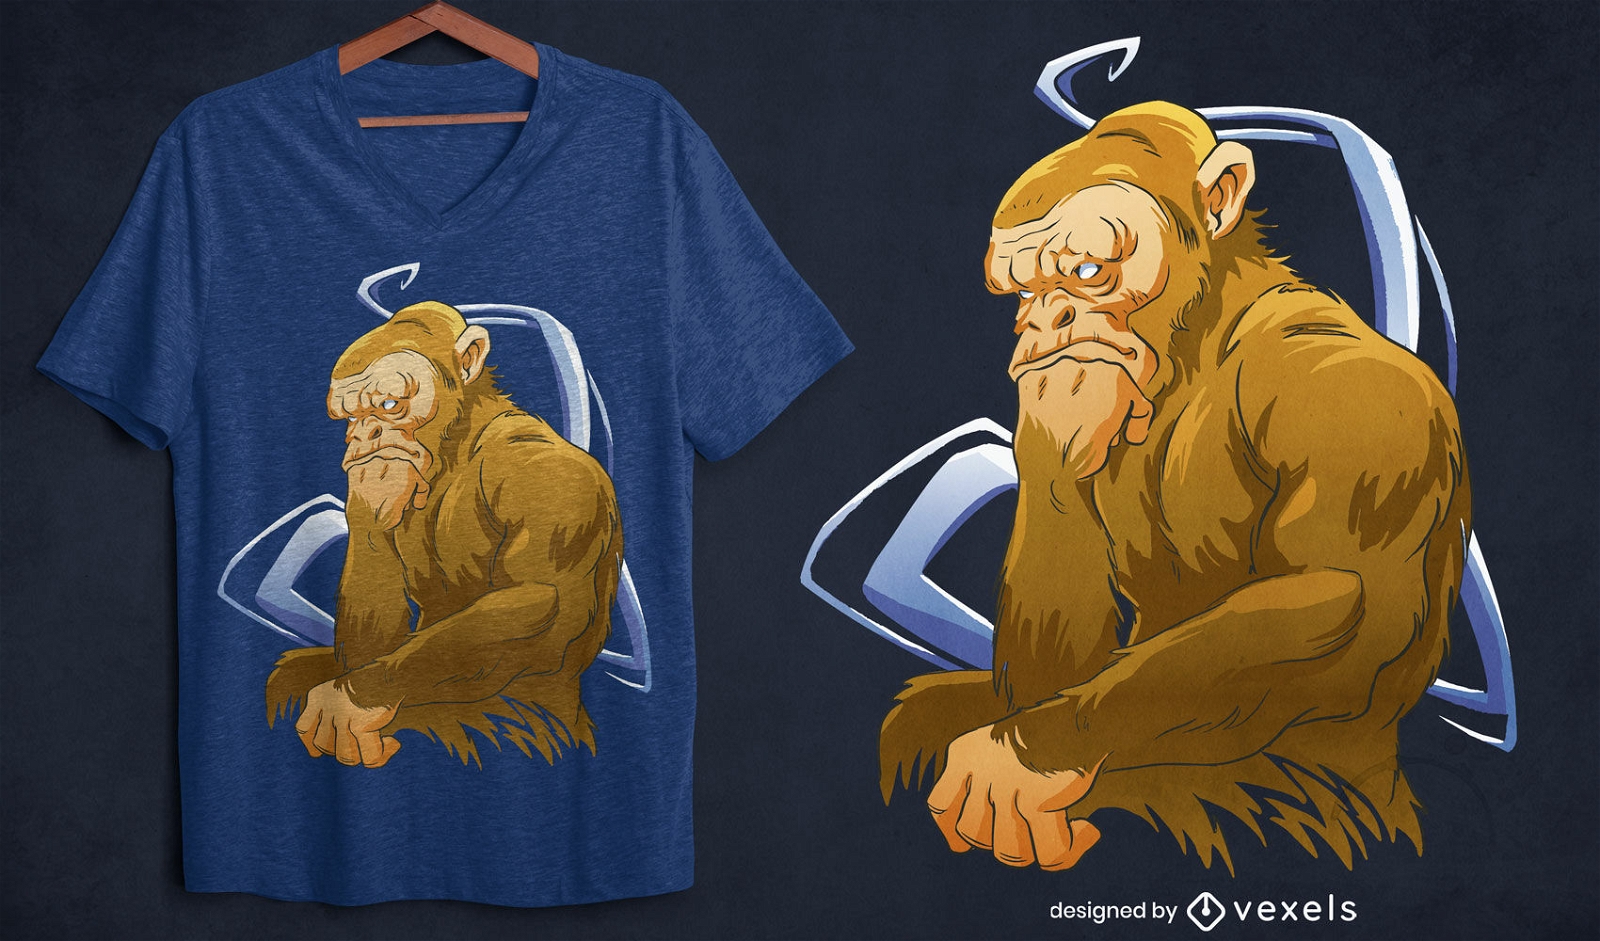 Dise?o de camiseta de personaje chimpanc?.